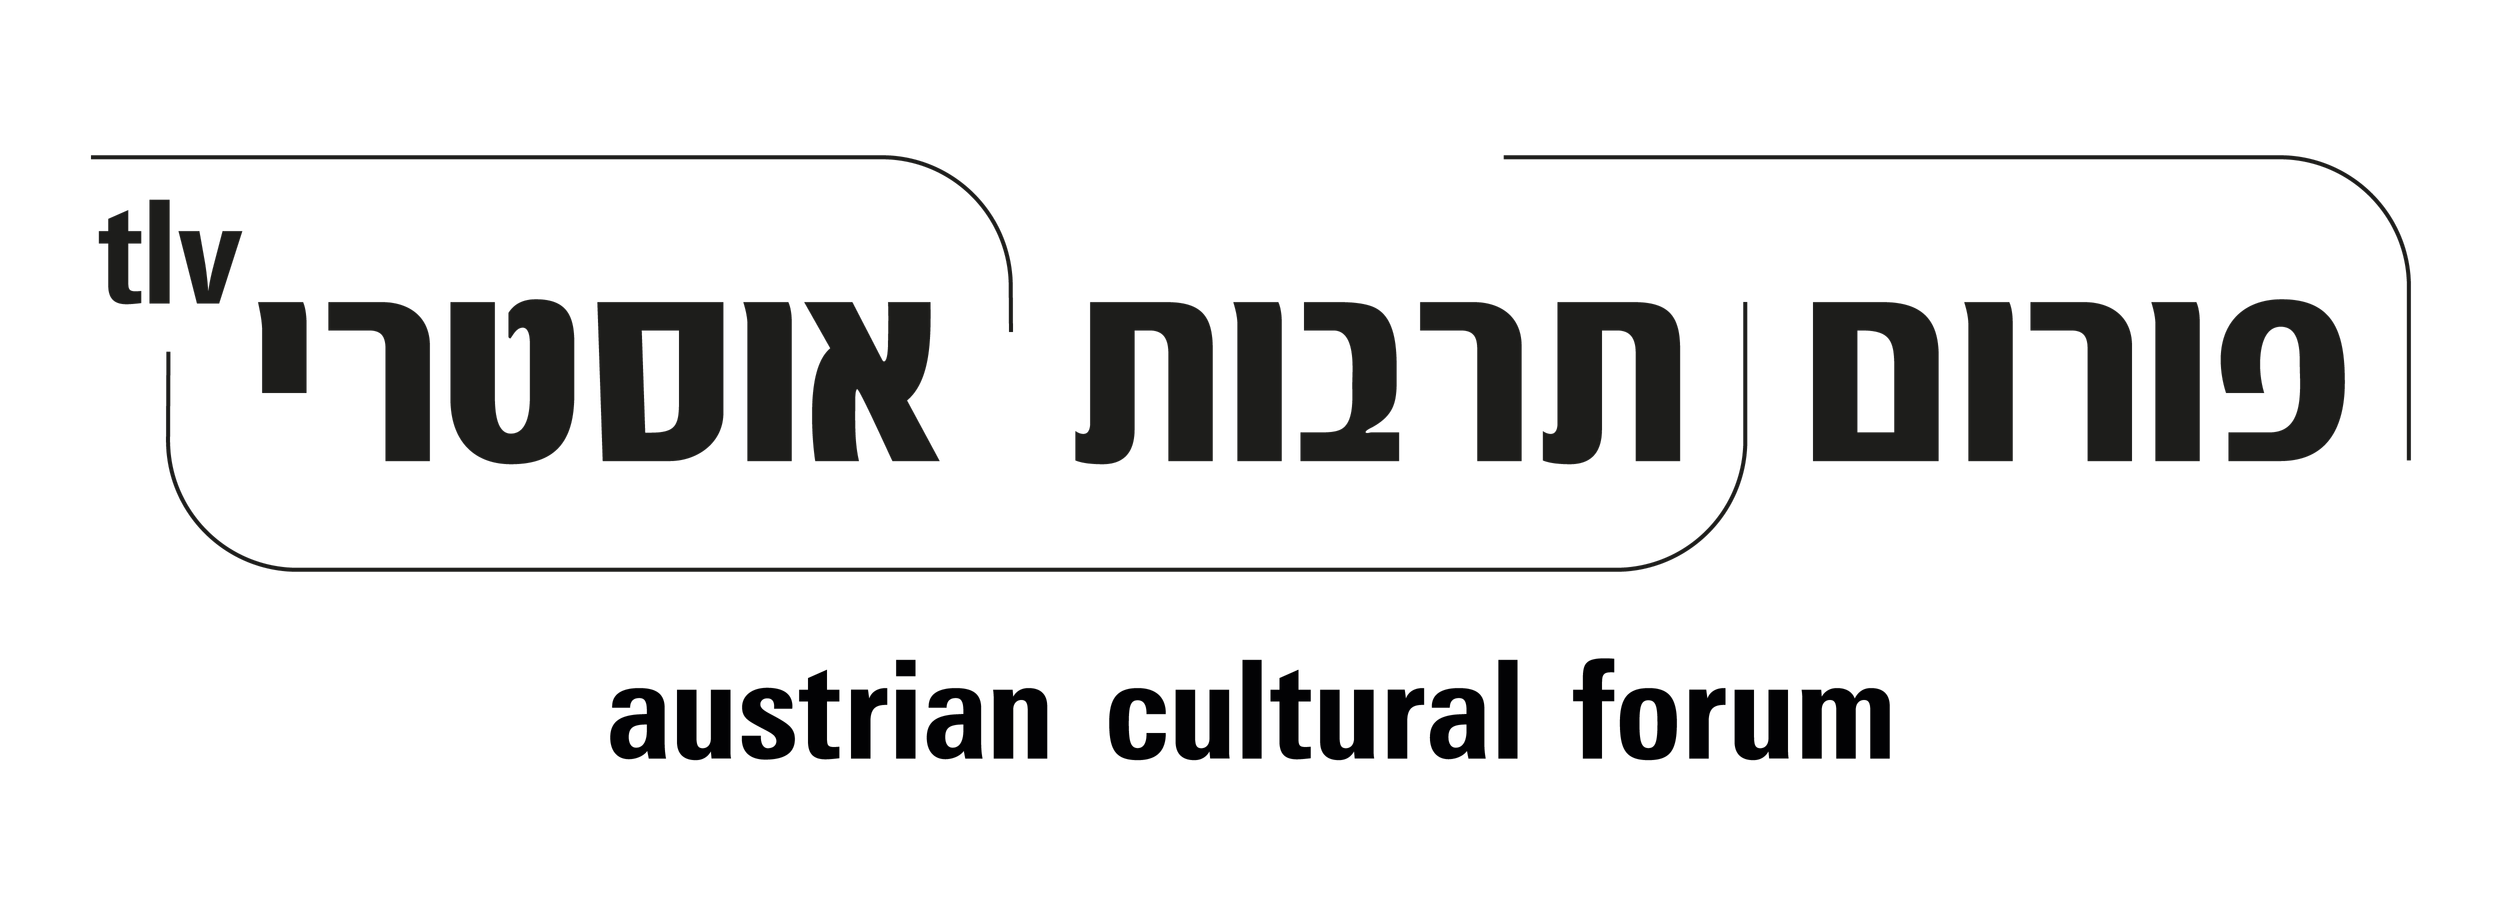 ÖKF_Logo_tlv_hebraeisch_englisch.png